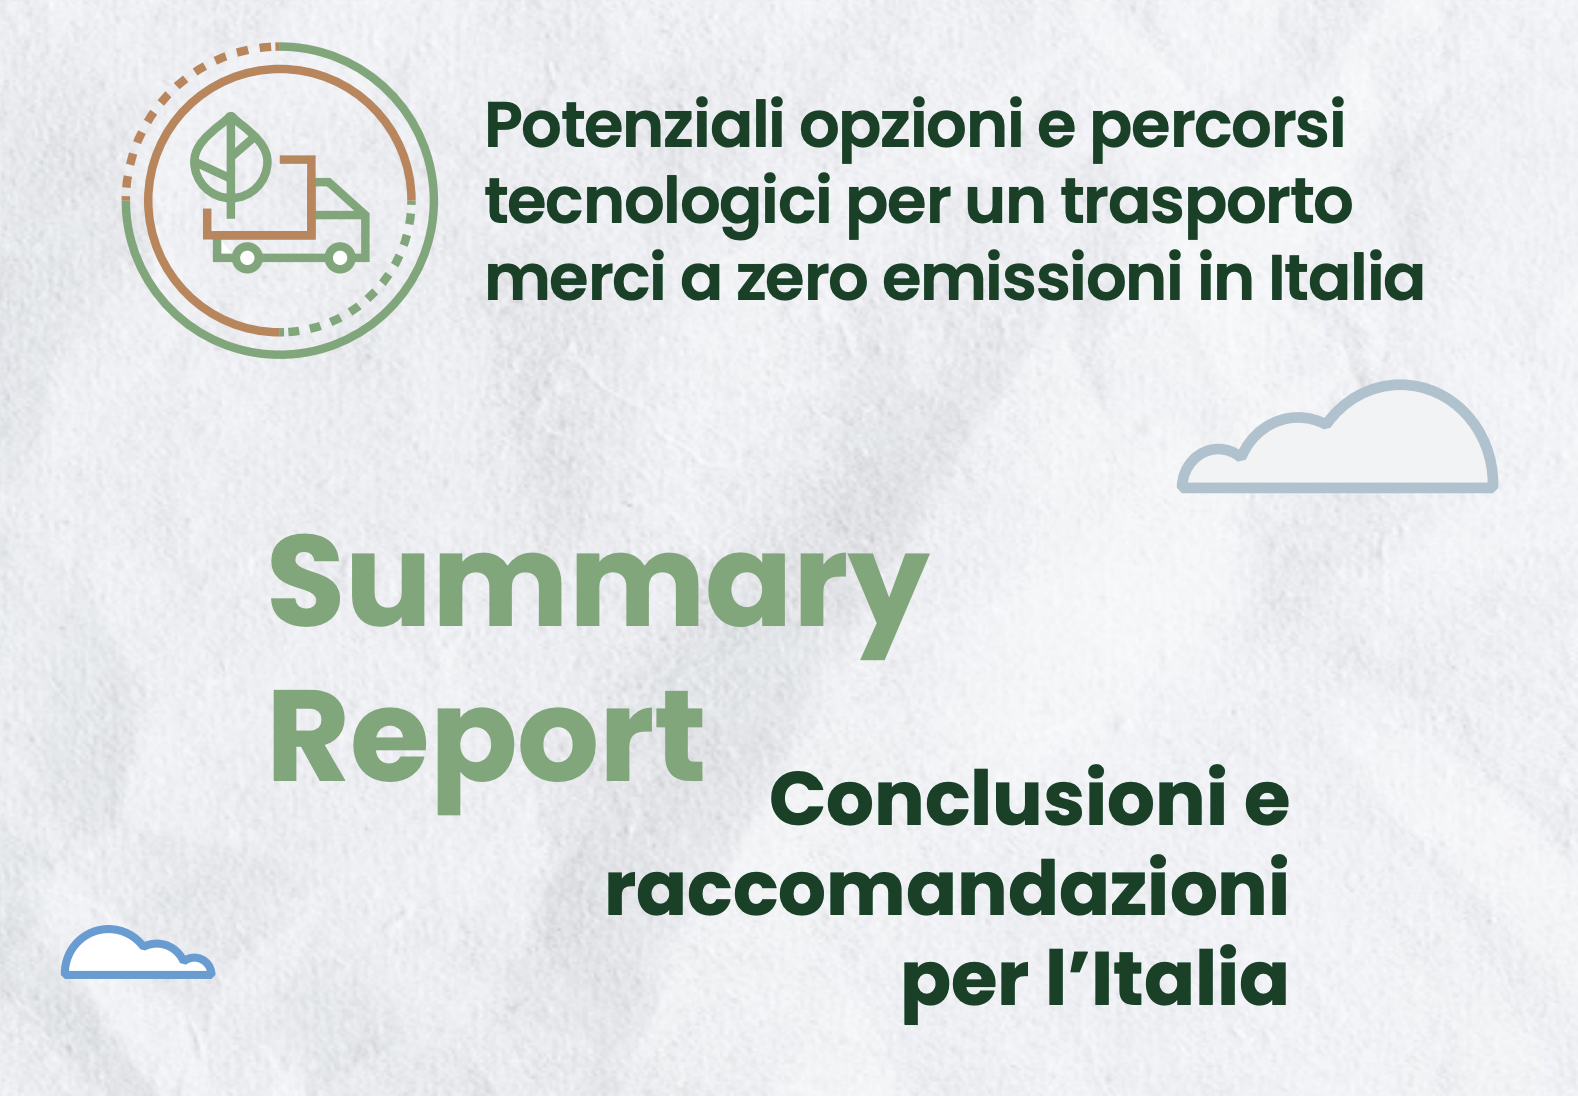 Potenziali opzioni e percorsi tecnologici per un trasporto merci a zero emissioni in Italia